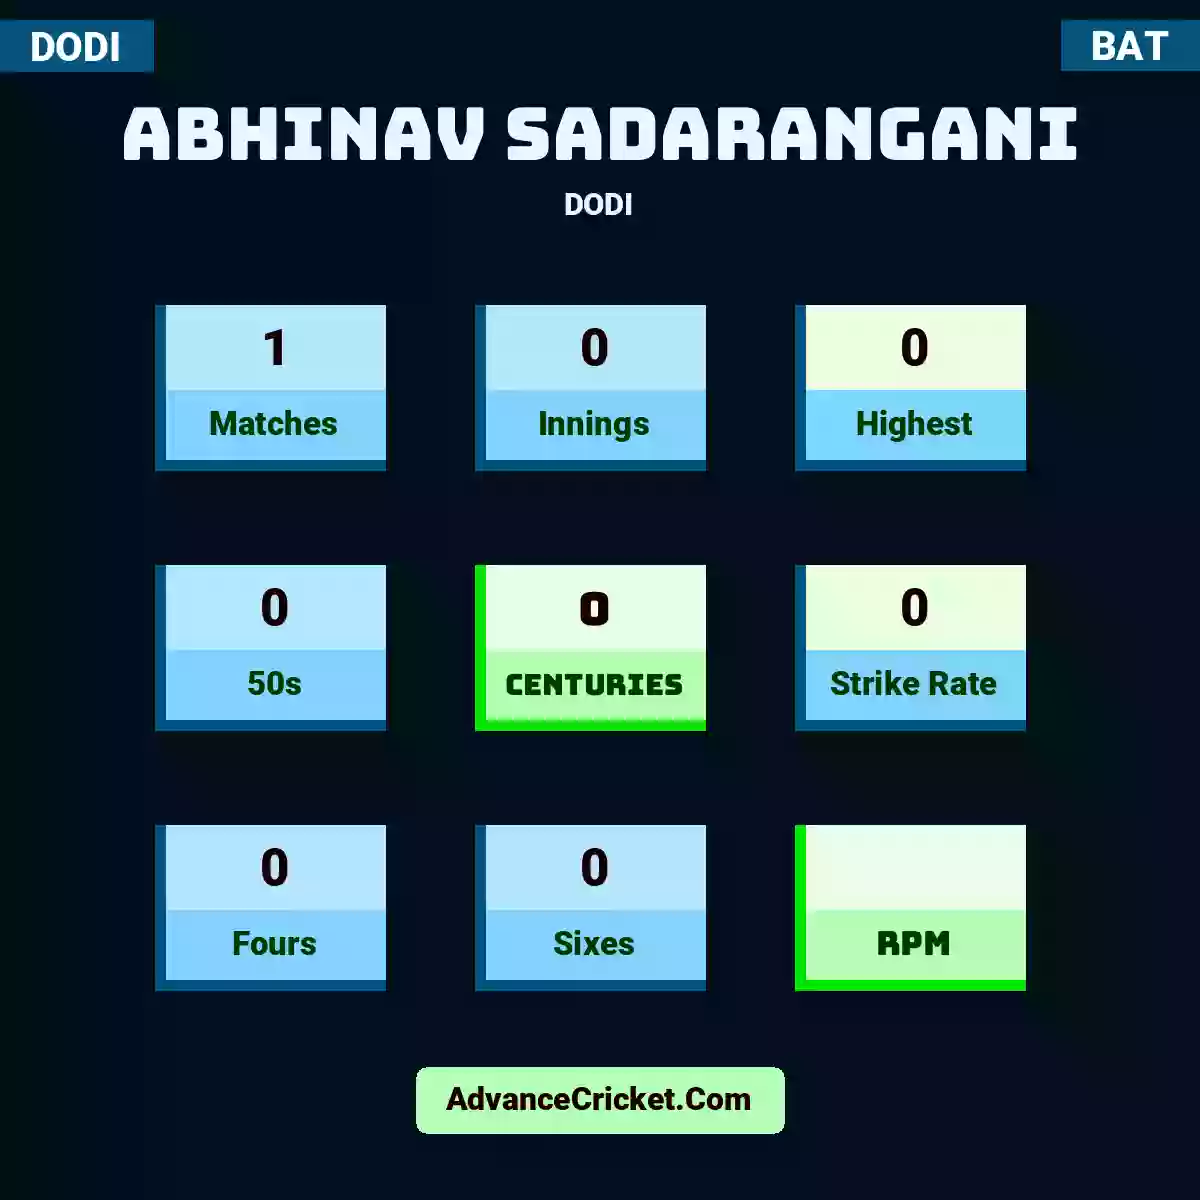 Abhinav Sadarangani DODI , Abhinav Sadarangani played 1 matches, scored 0 runs as highest, 0 half-centuries, and 0 centuries, with a strike rate of 0. A.Sadarangani hit 0 fours and 0 sixes.